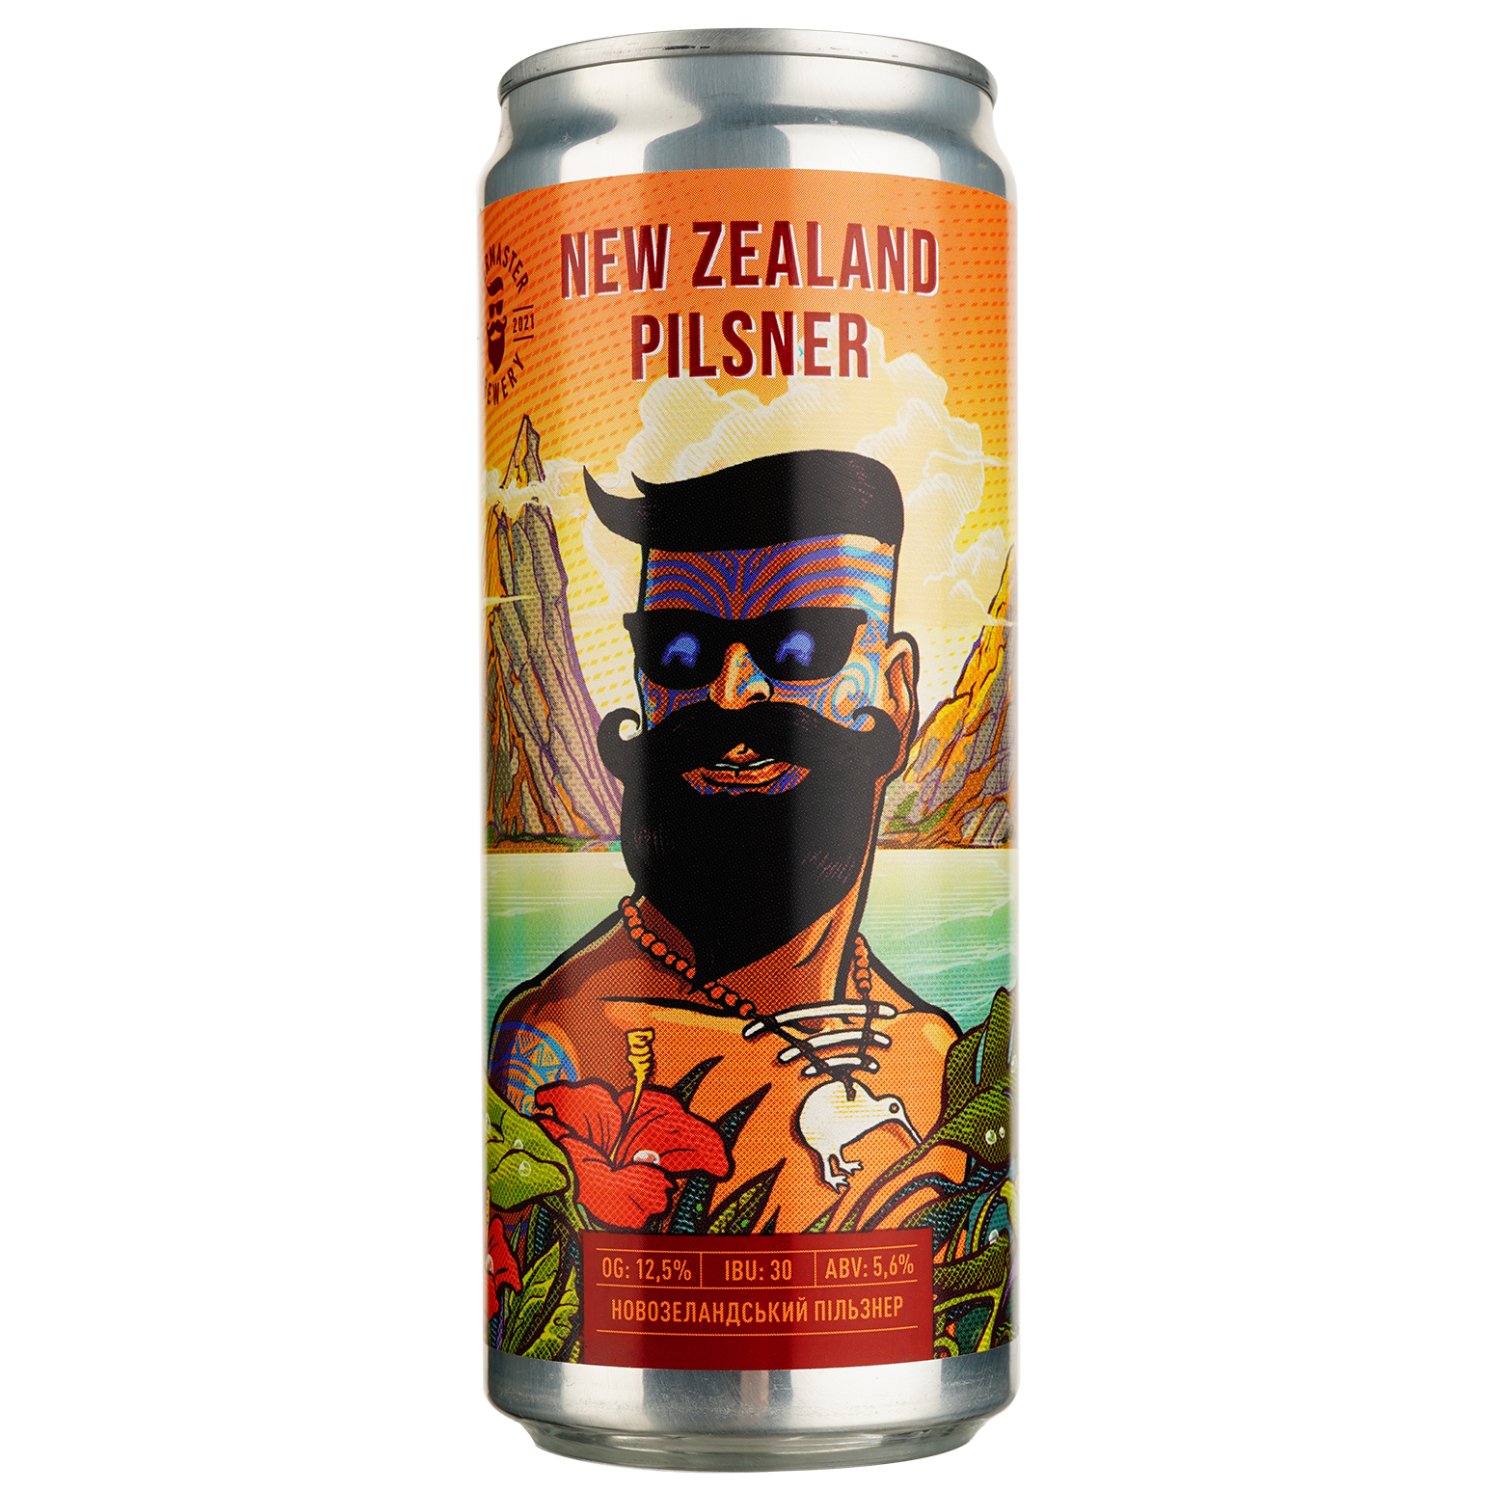 Пиво Beermaster Brewery New Zealand Pilsner, светлое, нефильтрованное, 5,6%, ж/б, 0,33 л - фото 1